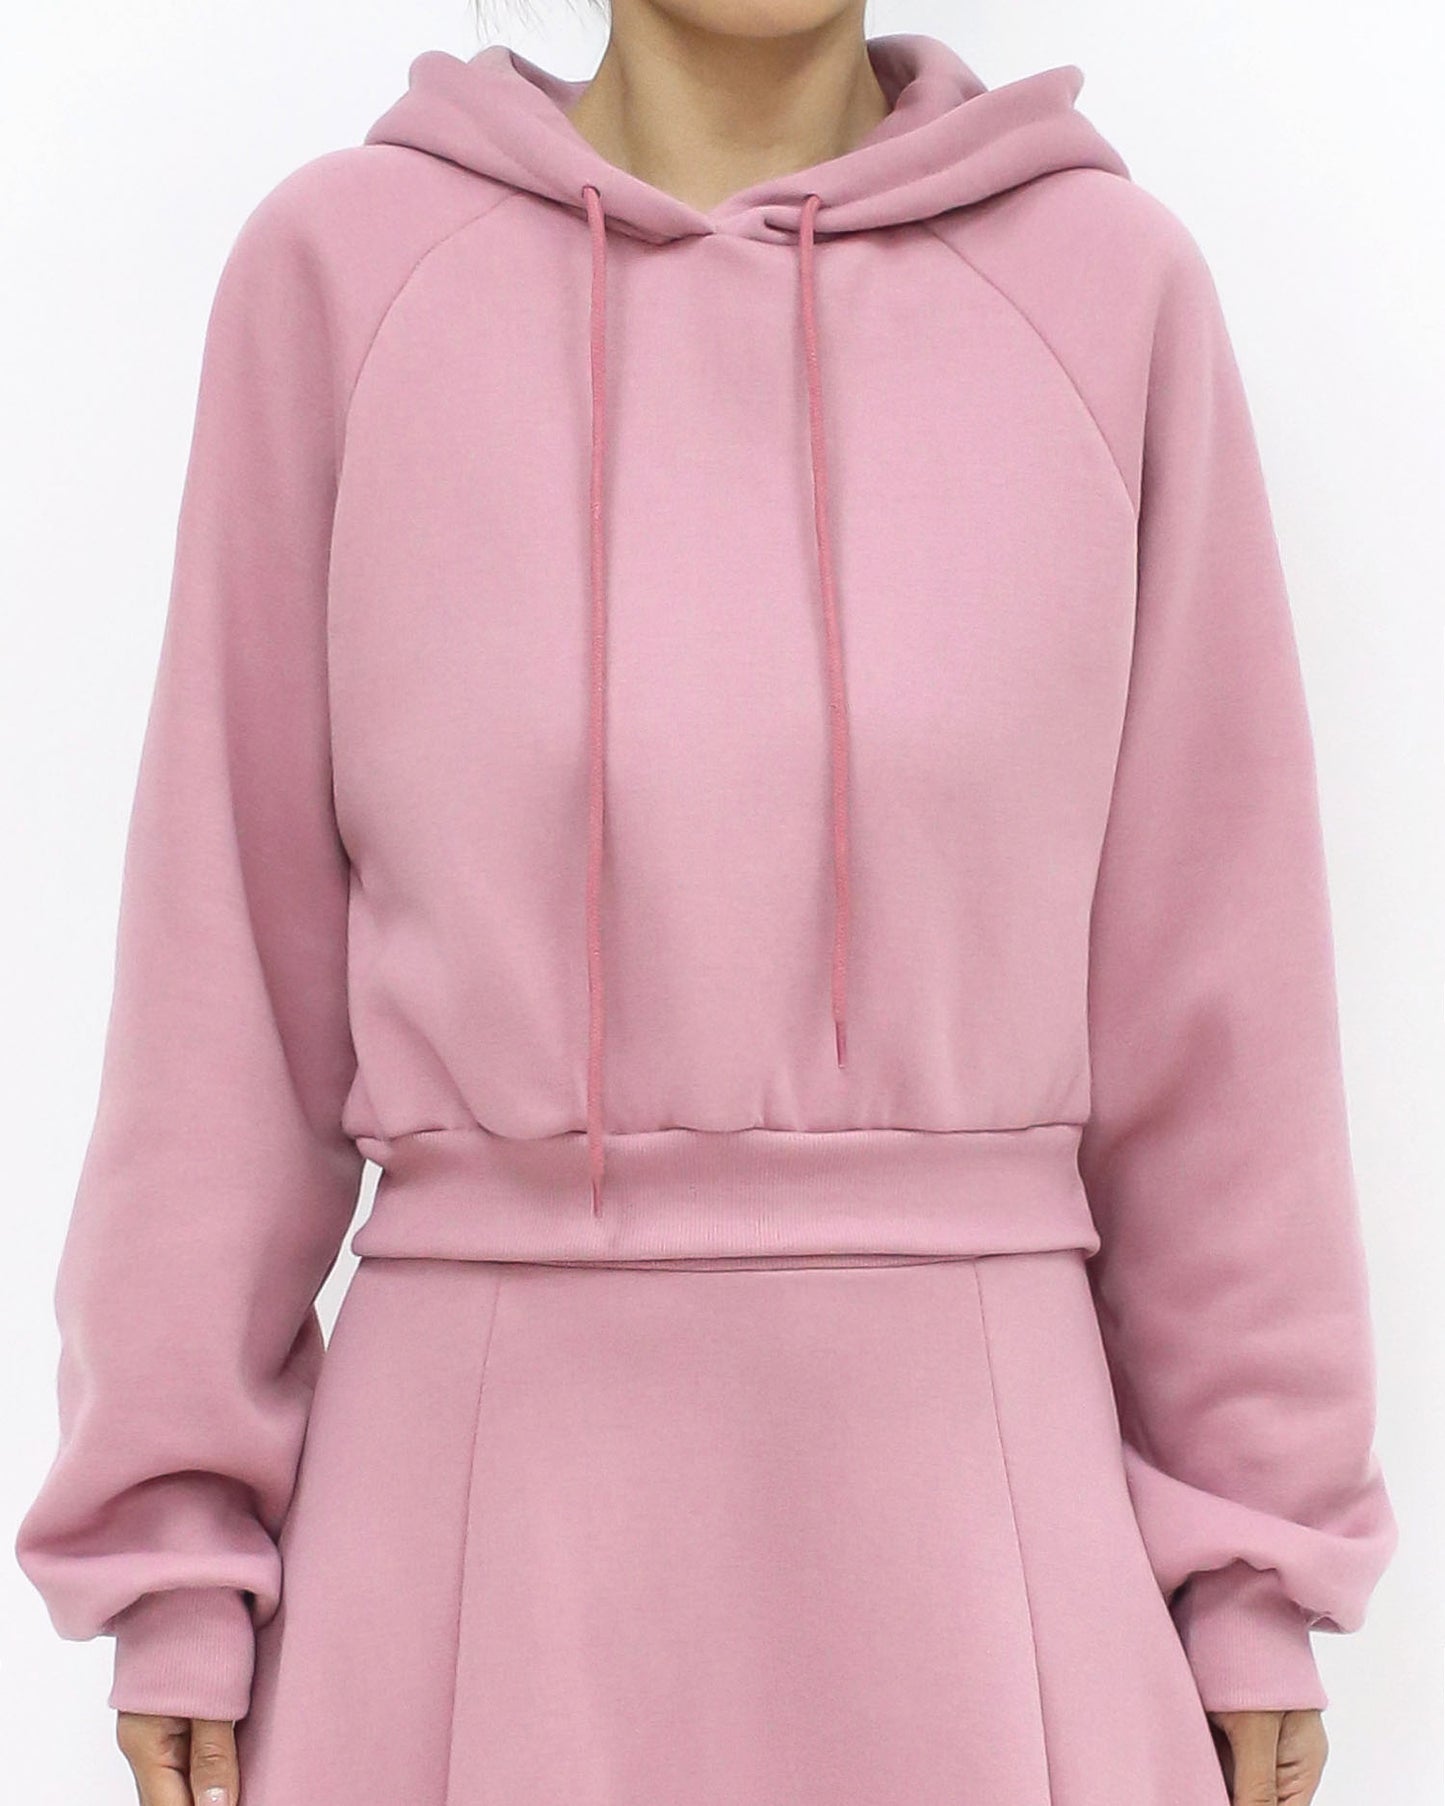 pink hoodie fleece sweatshirt & skirt set – STYLEGAL